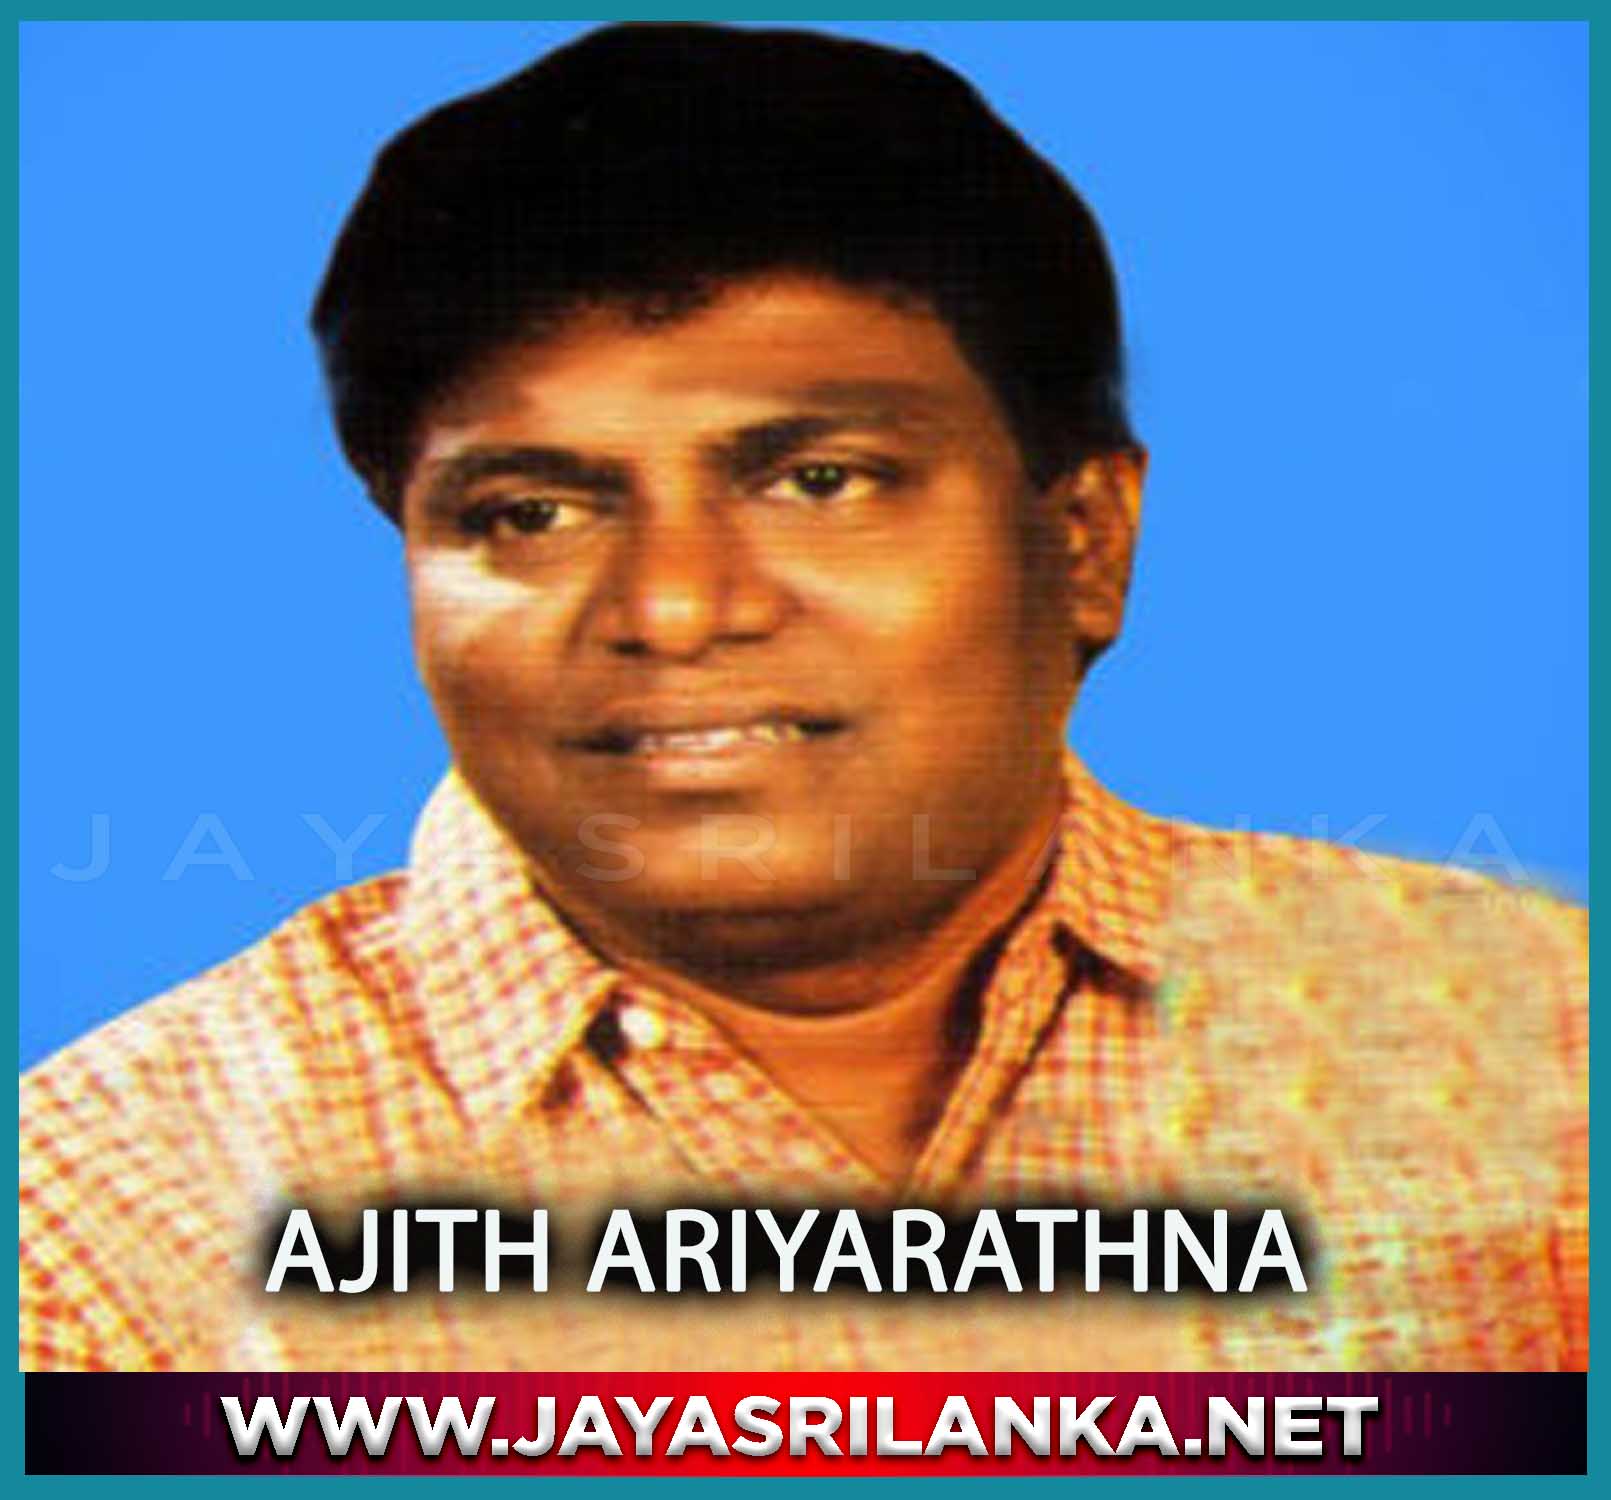 Thaniwenna Idadenna - Ajith Ariyarathna mp3 Image